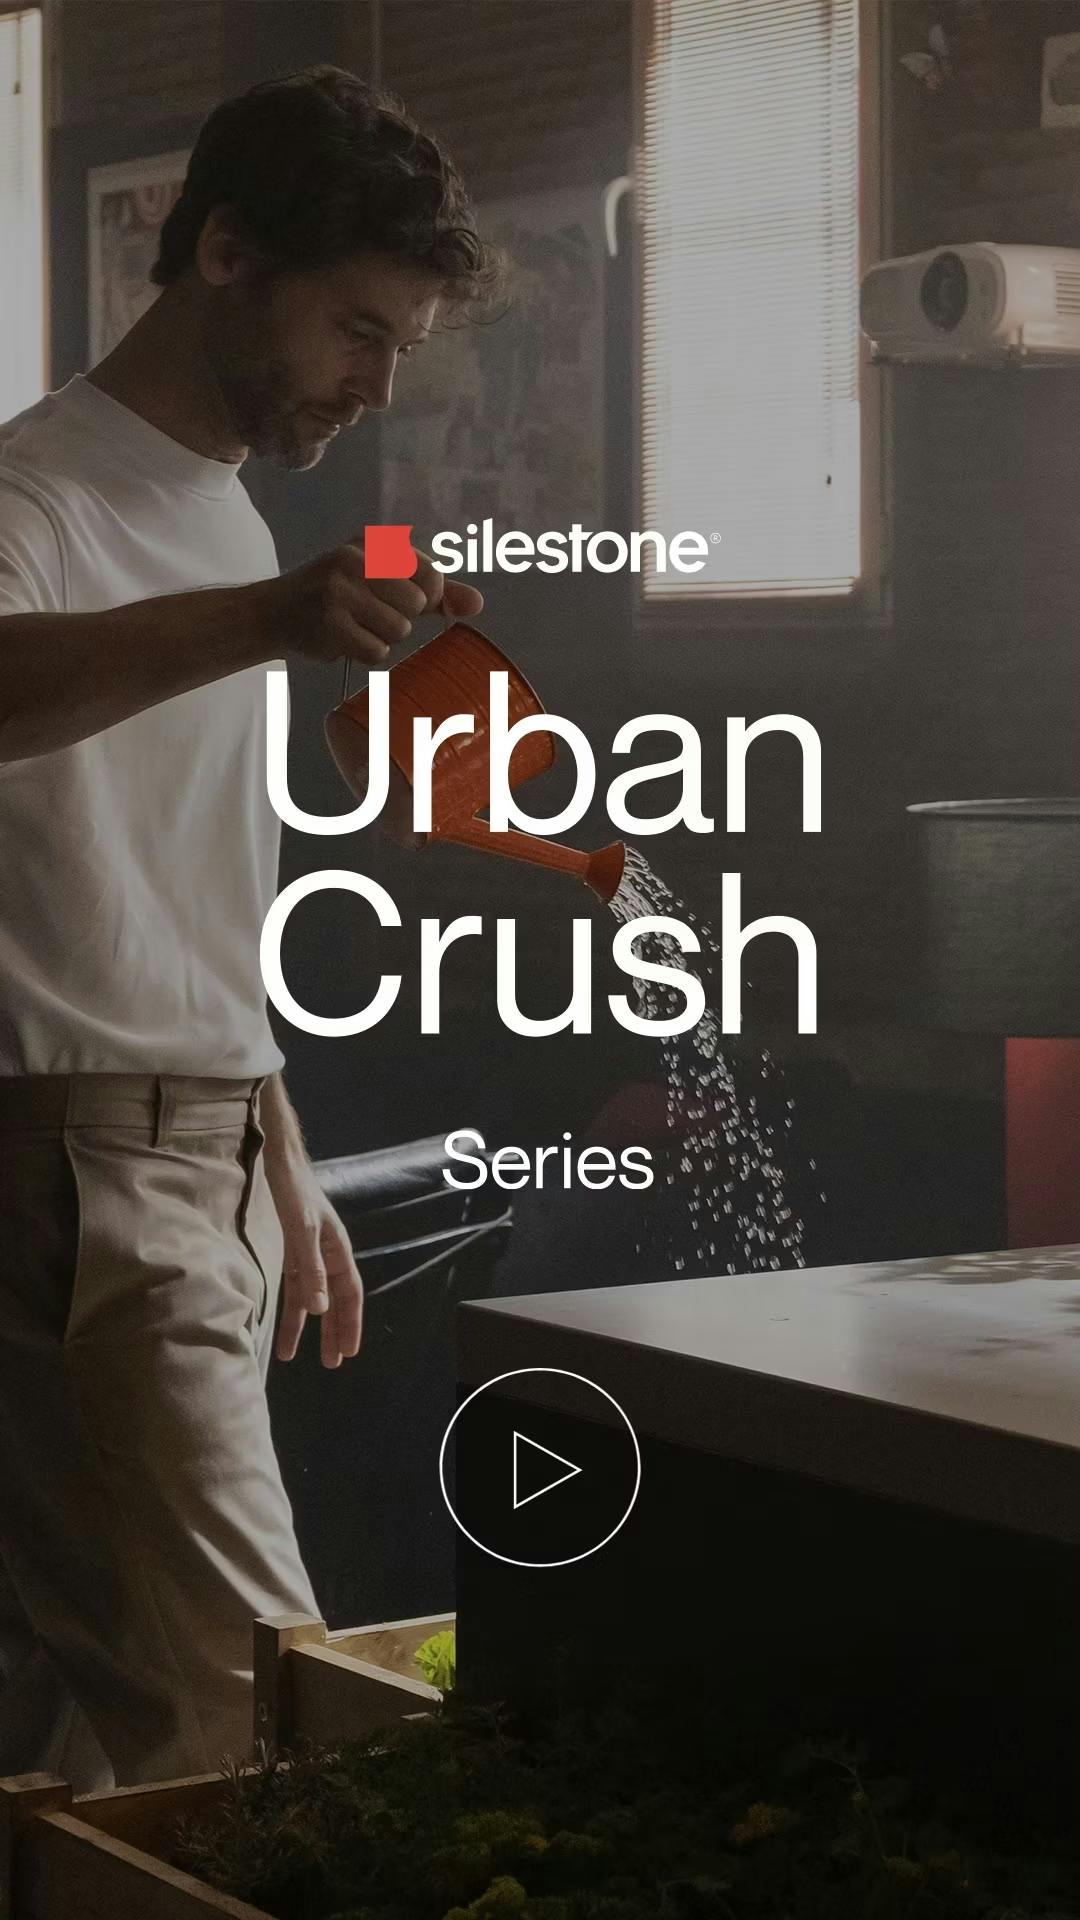 Bildnummer 33 des aktuellen Abschnitts von Silestone Urban Crush von Cosentino Österreich